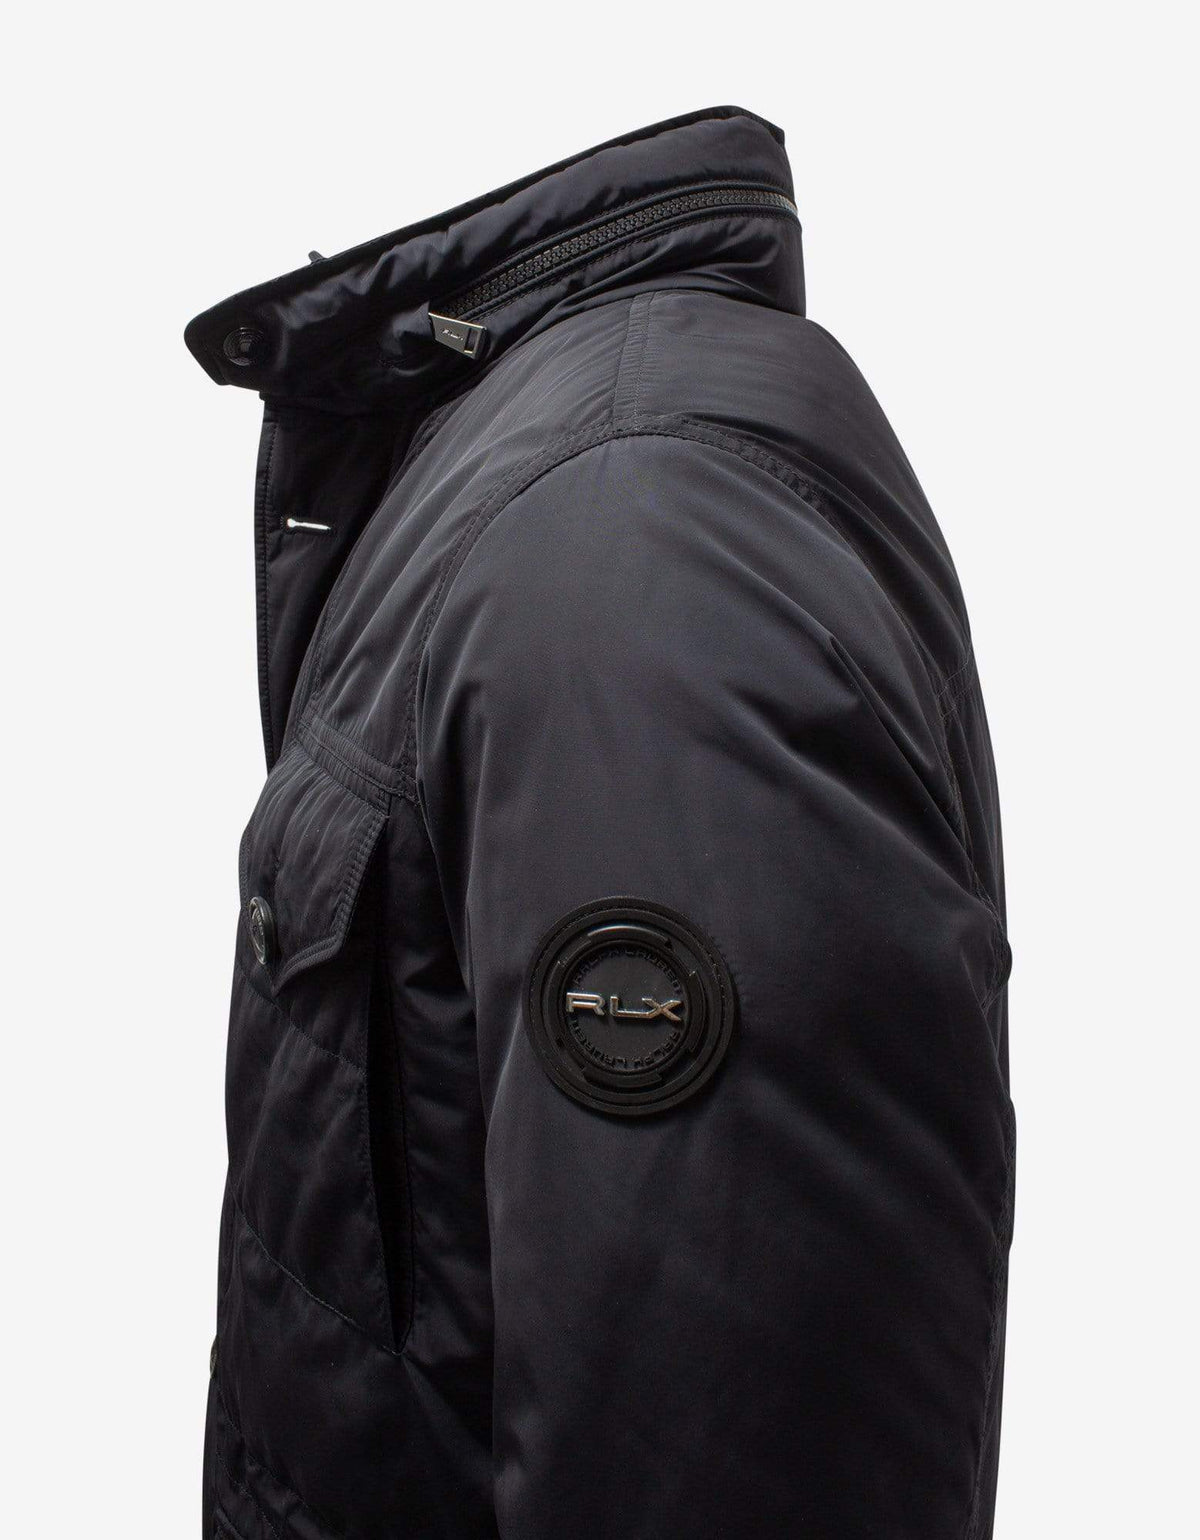 Ralph Lauren RLX Condover 4 Pocket Black Jacket